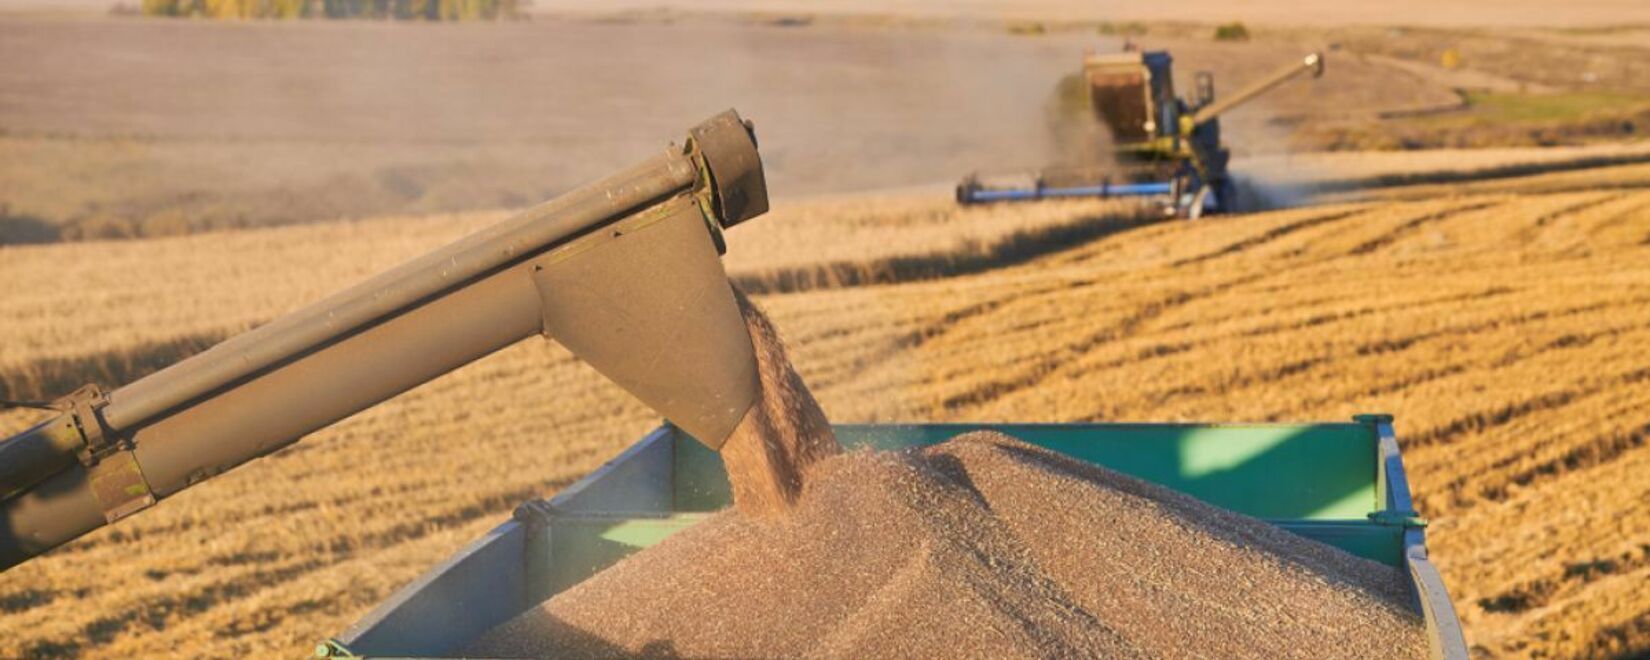 Эксперты Agritel повысили прогноз экспорта мягкой пшеницы из Франции